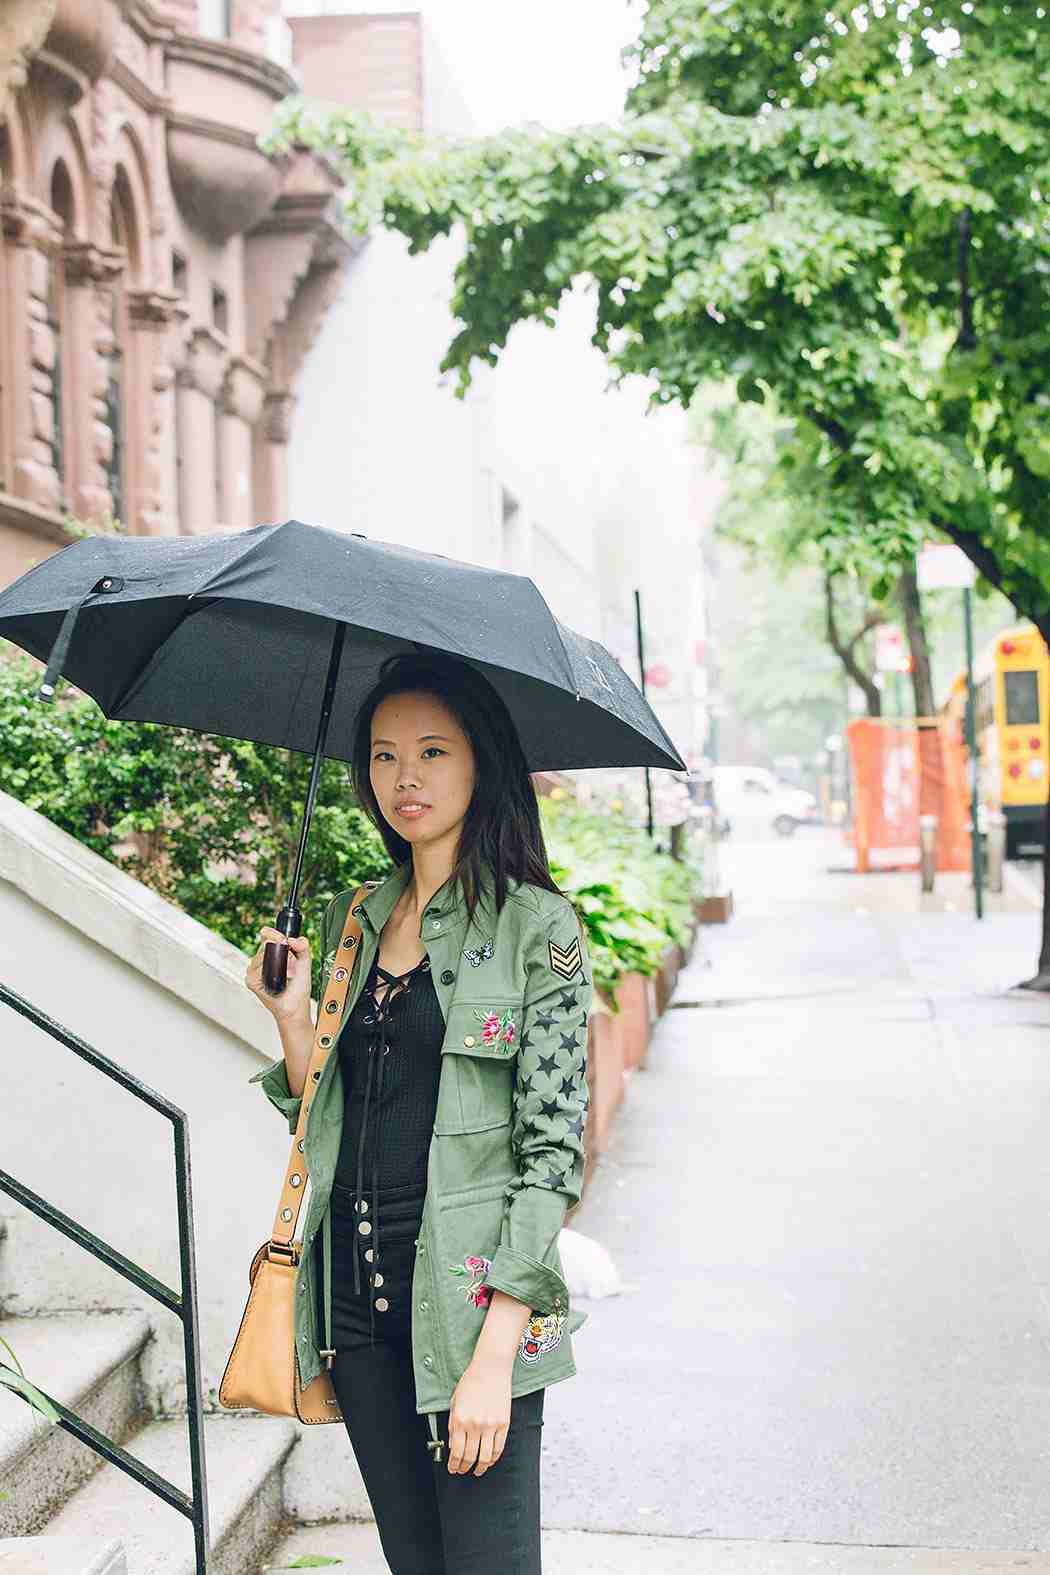 Förslag på regnkläder för kvinnor i svart och khaki